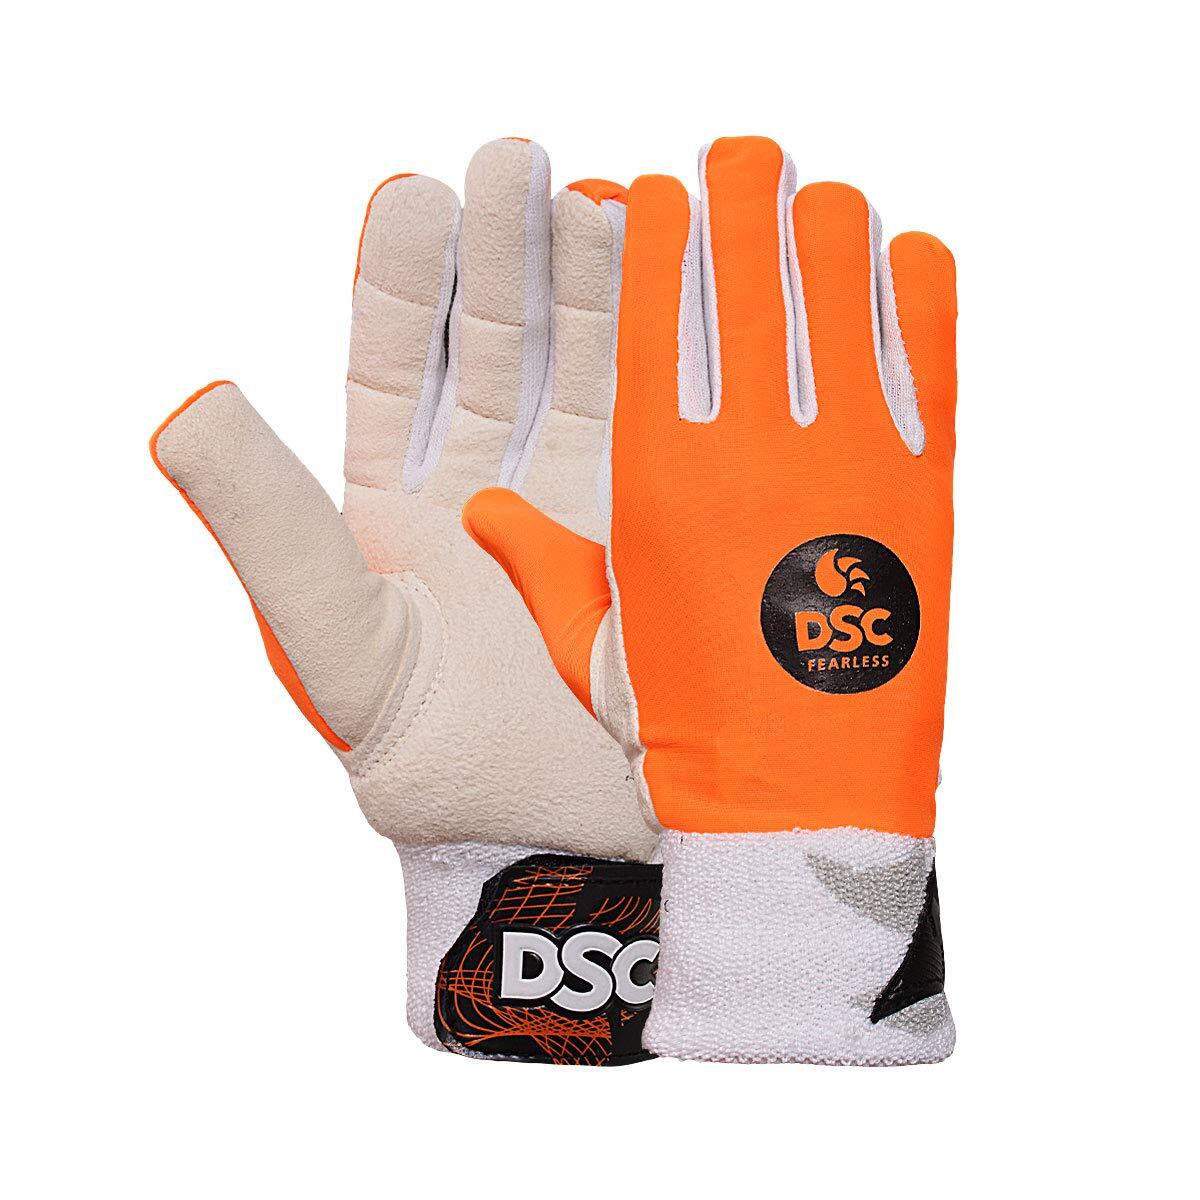 DSC DSC Pro Wicket keeping Inner Gloves